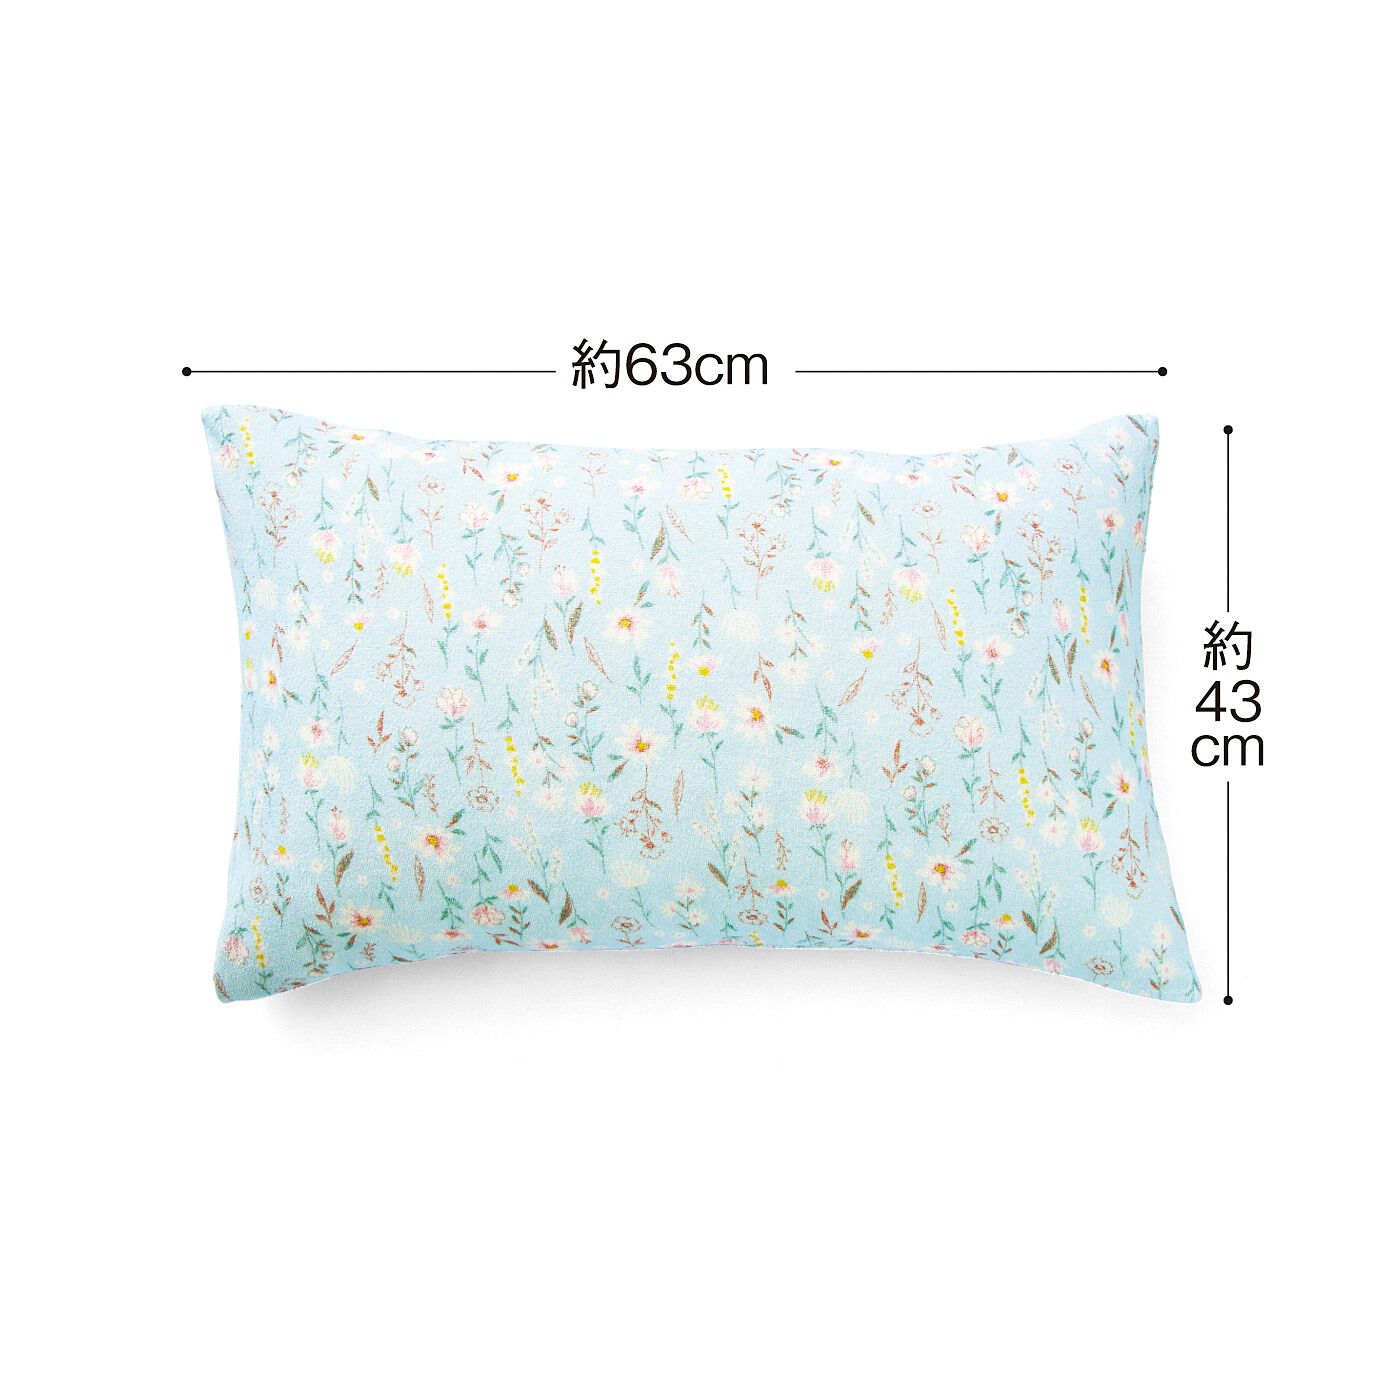 フェリシモの雑貨 Kraso|クーフゥ　心地よい肌あたりで軽やかに舞う花々に包まれる ぴったりフィット さらりパイルの枕カバーの会|縦約43cm、横約63cmまでの枕に使用できます。